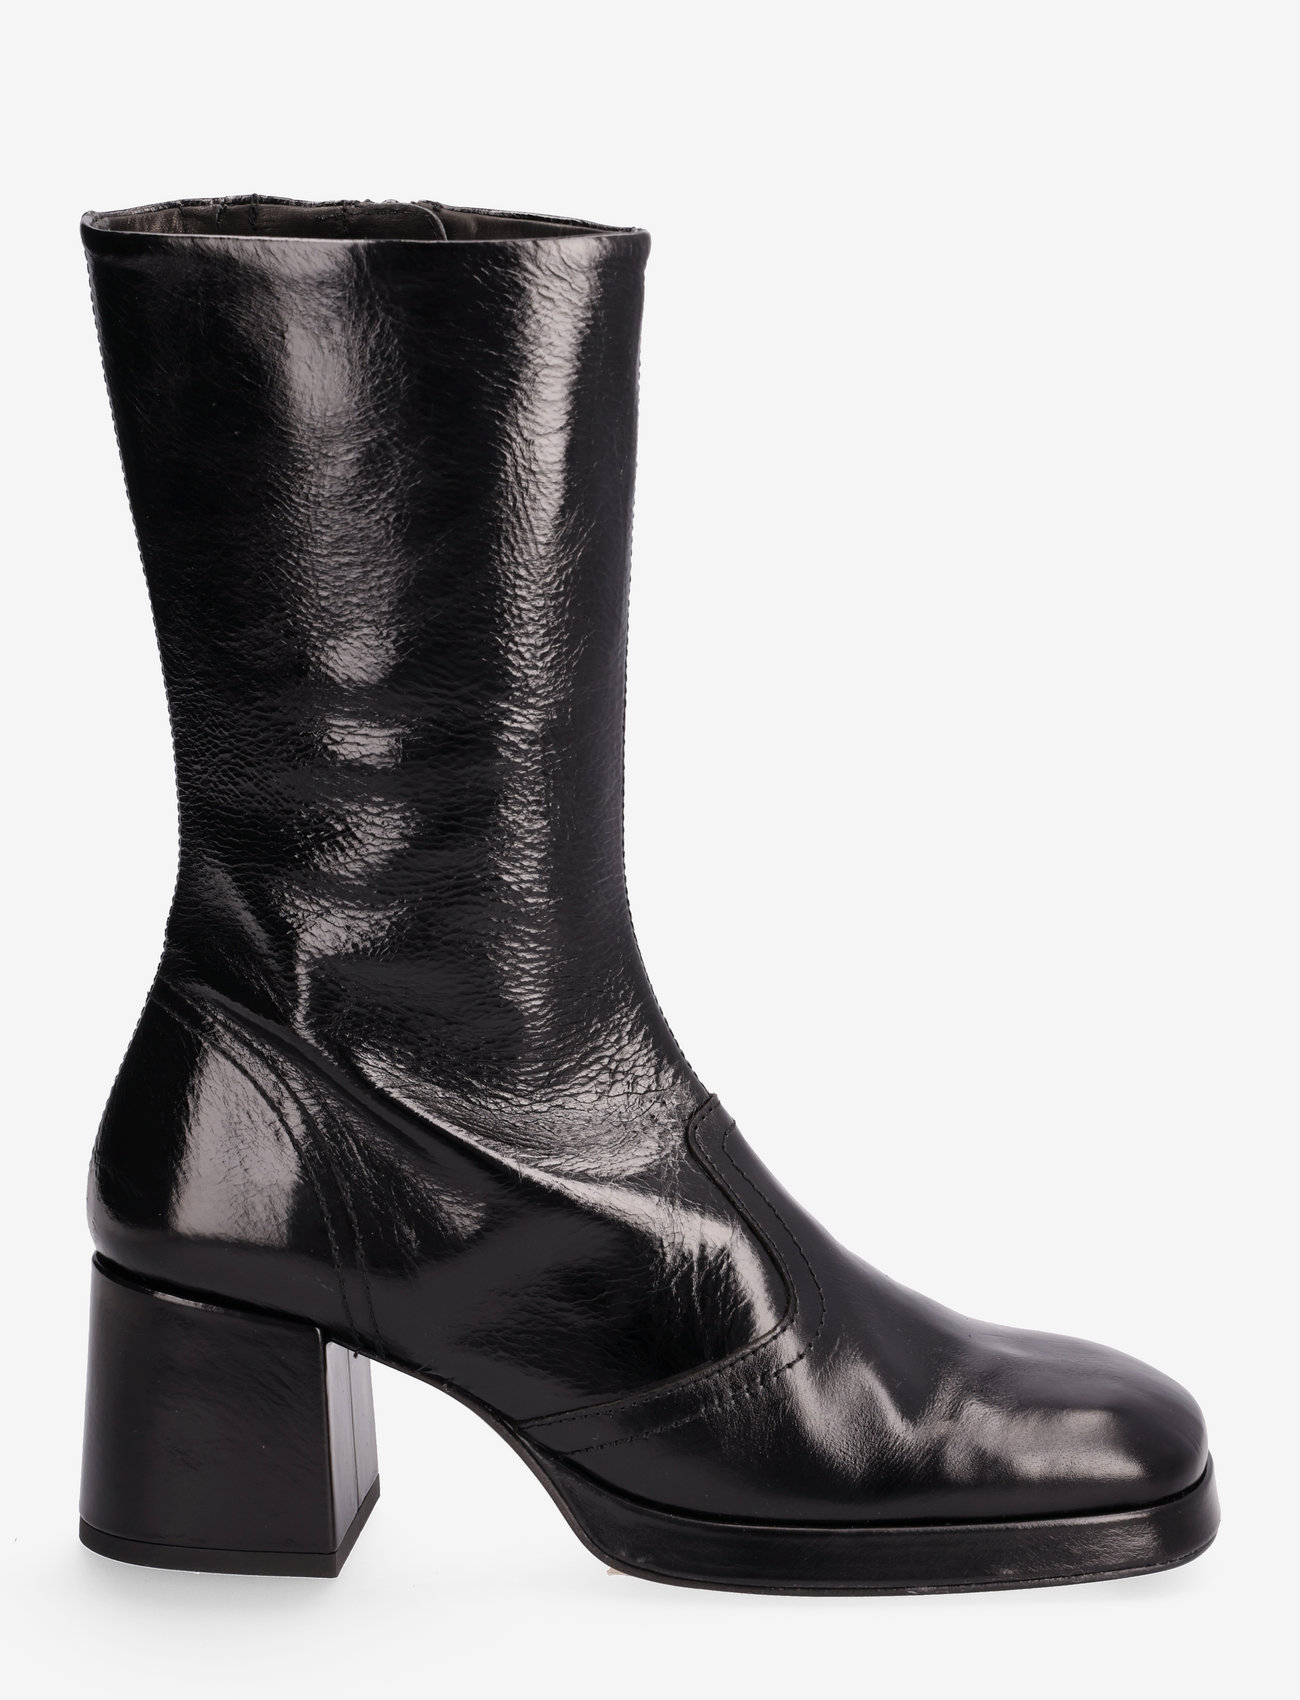 MIISTA - CASS BLACK BOOTS - high heel - black - 1